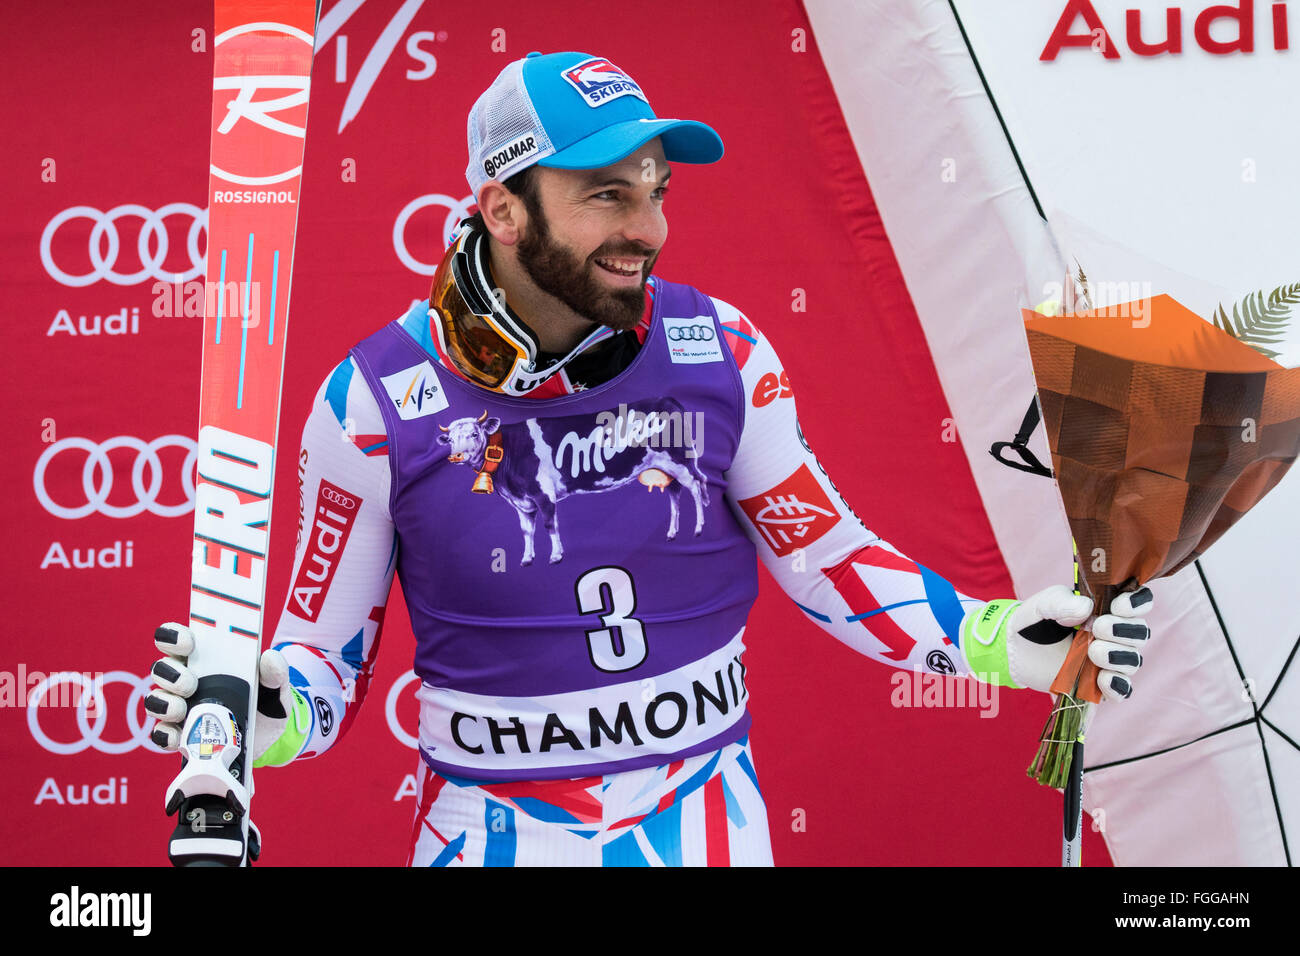 Chamonix, France. 19 Février, 2016. 3e place Thomas Mermillod Blondin sur le podium. L'épreuve du combiné alpin masculin (descente et slalom) a pris fin avec la descente de la dernière course en raison des conditions météorologiques (neige lourde) à l'heure à Chamonix. La course a commencé à 15h15 sur un cours abrégé après une autre heure de retard. Le podium était - 1- Alexis PINTURAULT (FRA) 2:13.29 2- PARIS Dominik (ITA) 2:13.56 3-MERMILLOD BLONDIN Thomas (FRA) 2:13. Credit : Genyphyr Novak/Alamy Live News Banque D'Images